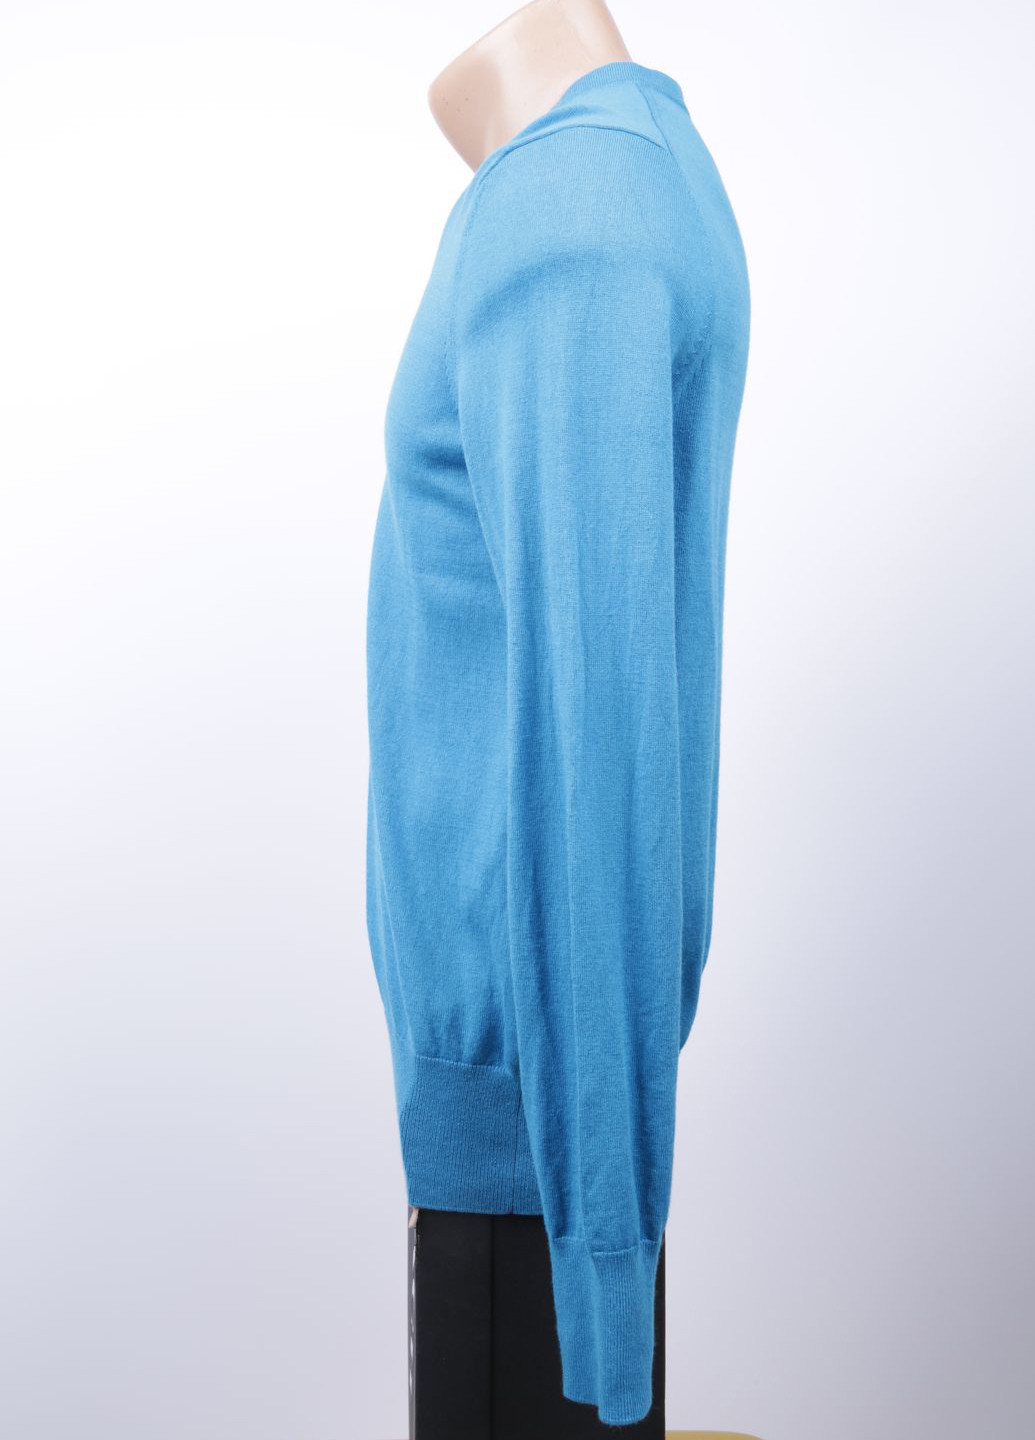 Голубой демисезонный пуловер пуловер Banana Republic